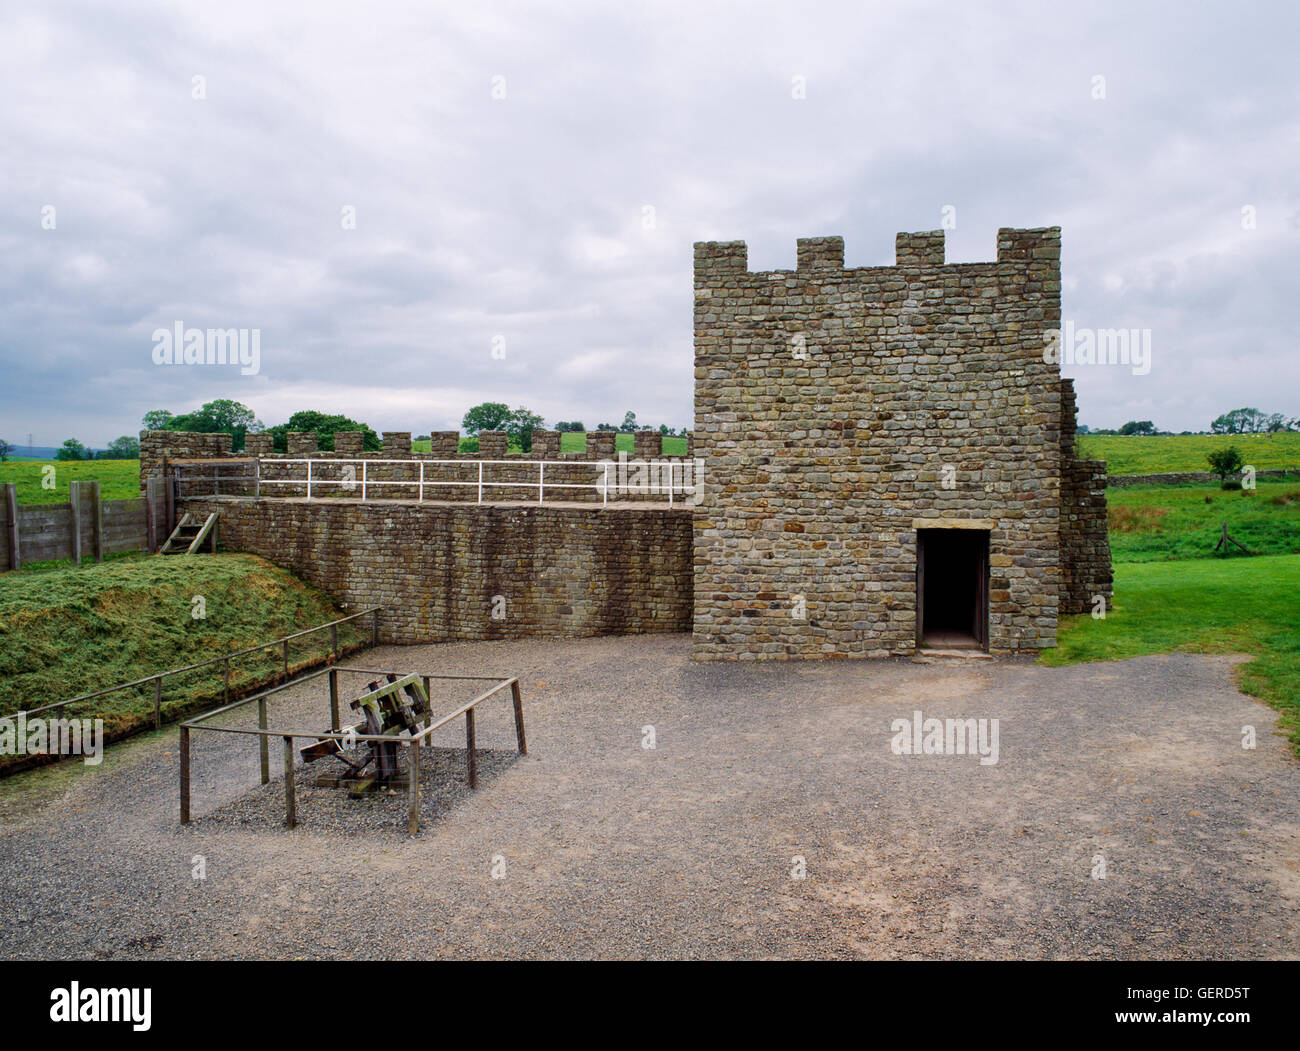 Vindolanda Roman Fort, Northumberland: replica tratti del Muro di Adriano con torretta di pietra, parapetto merlato & wall-walk & turf parete. Foto Stock